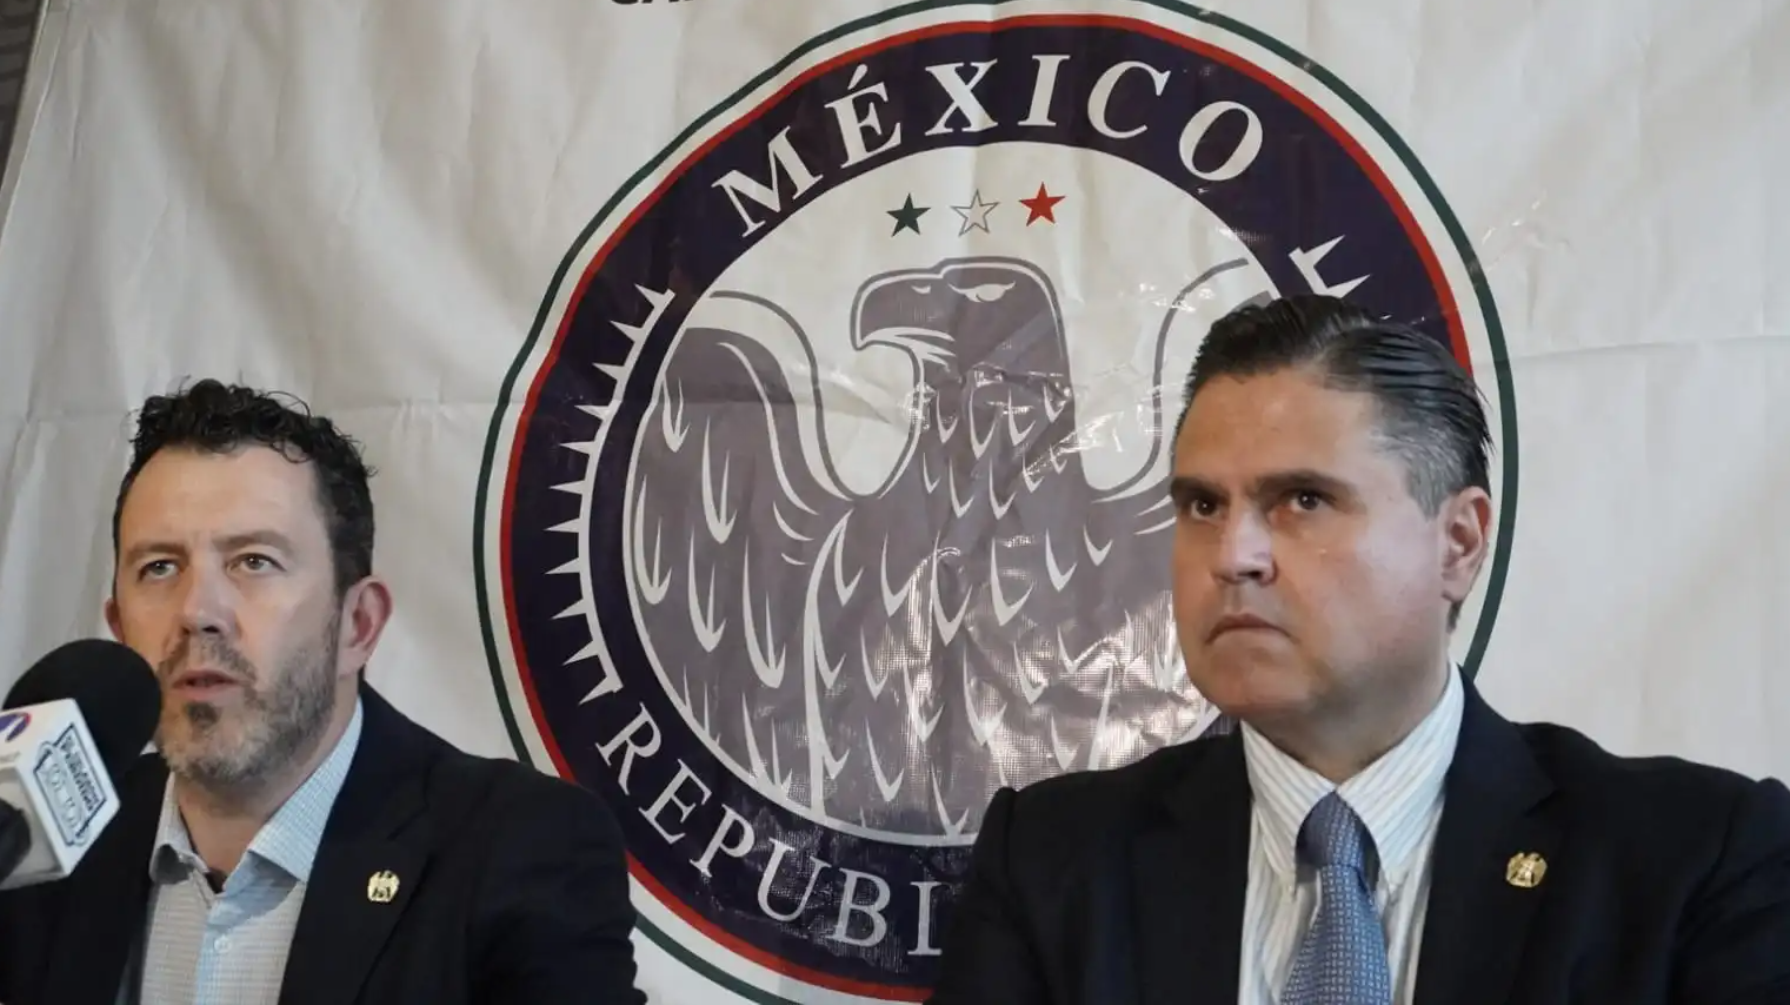 Dan registro a México Republicano como partido político en Chihuahua; su líder es afín al trumpismo